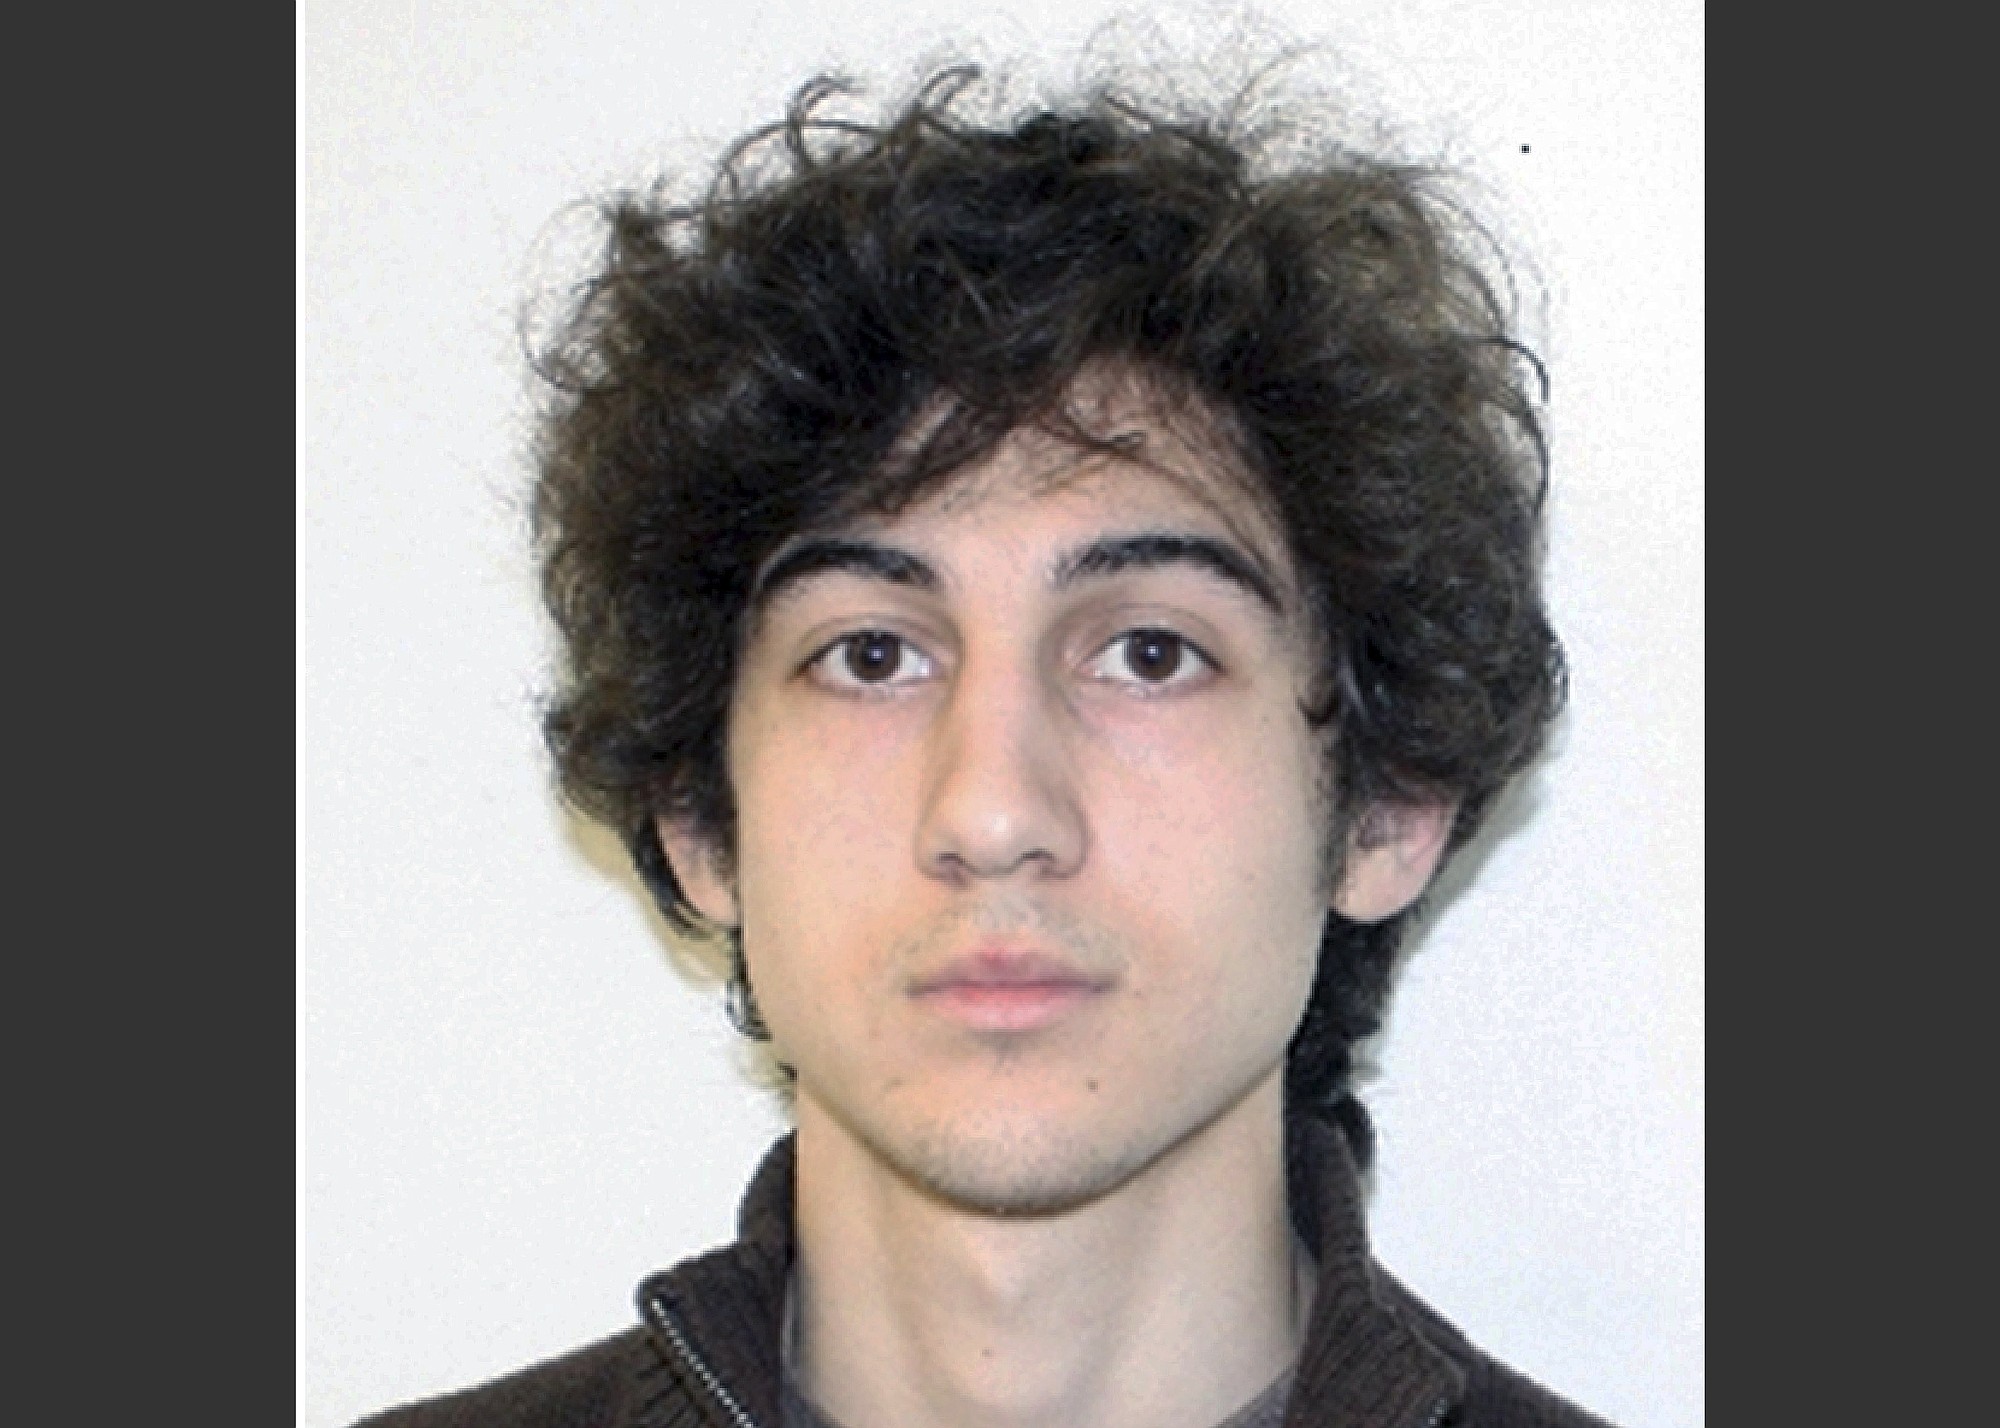 Dzhokhar Tsarnaev
Boston Marathon bombing suspect